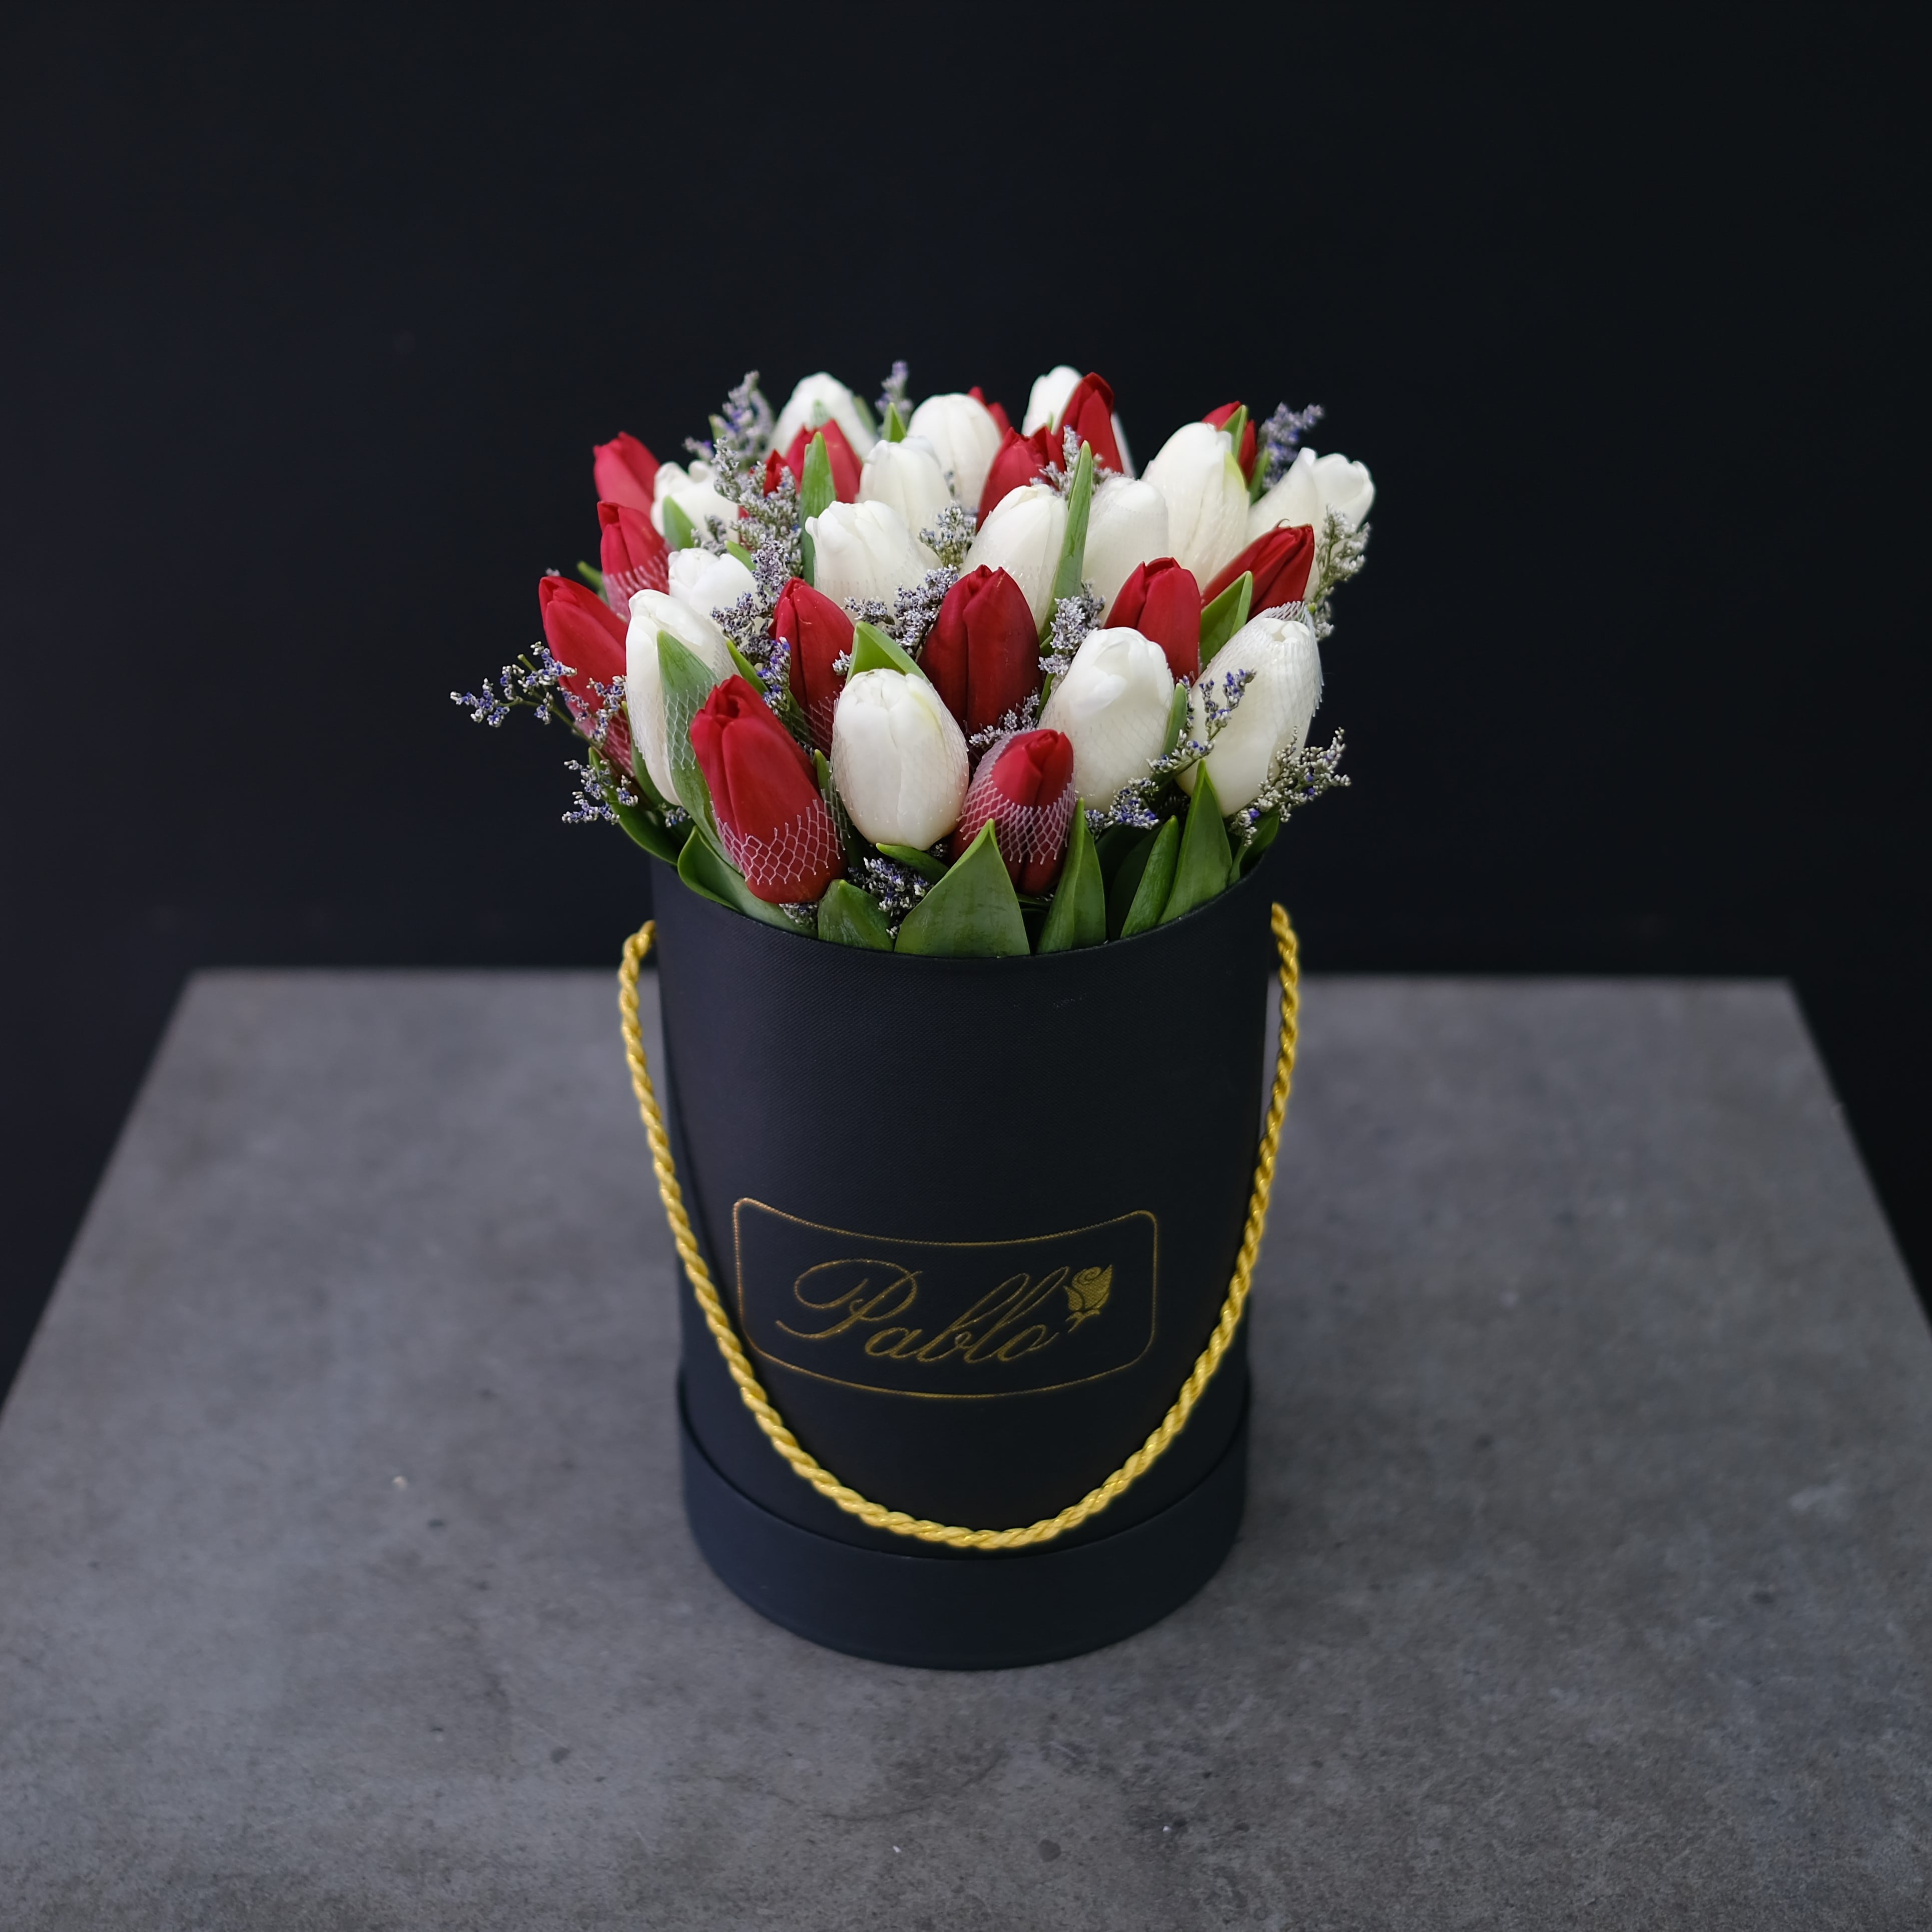 6500 TRUE LOVE 30 15red15white tulips on black-min.jpg